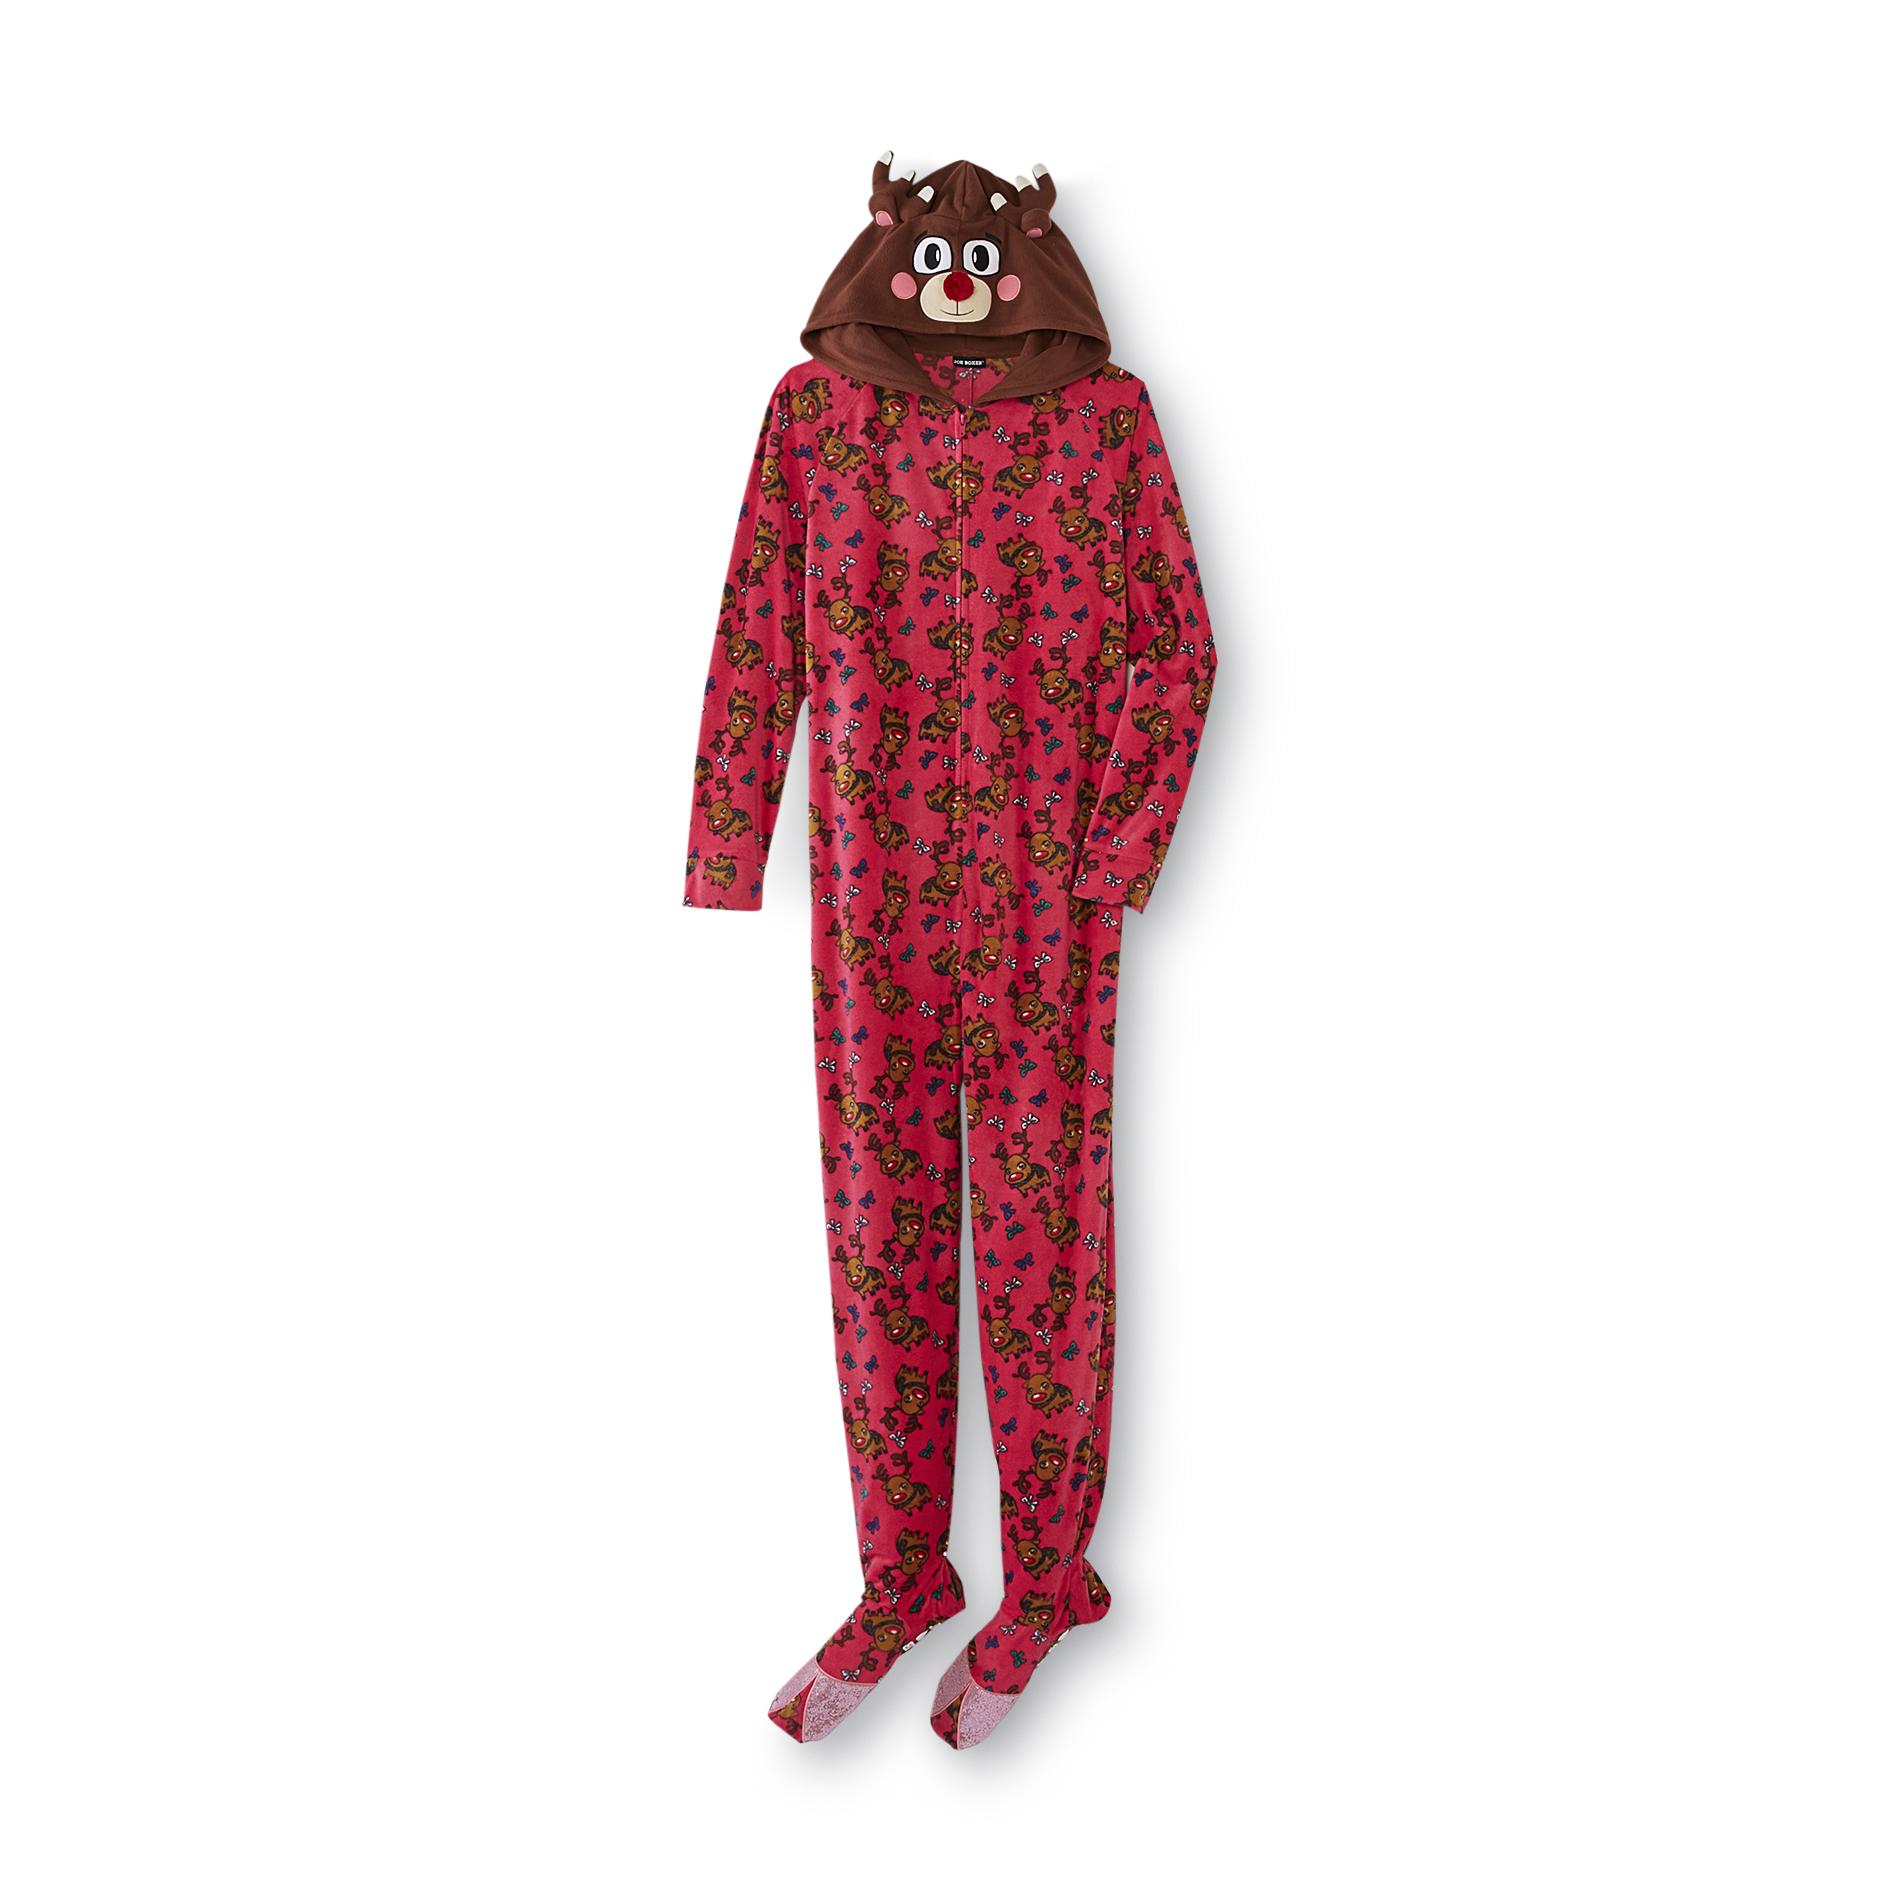 Joe Boxer Women's Reindeer Hooded Fleece Footie Pajamas